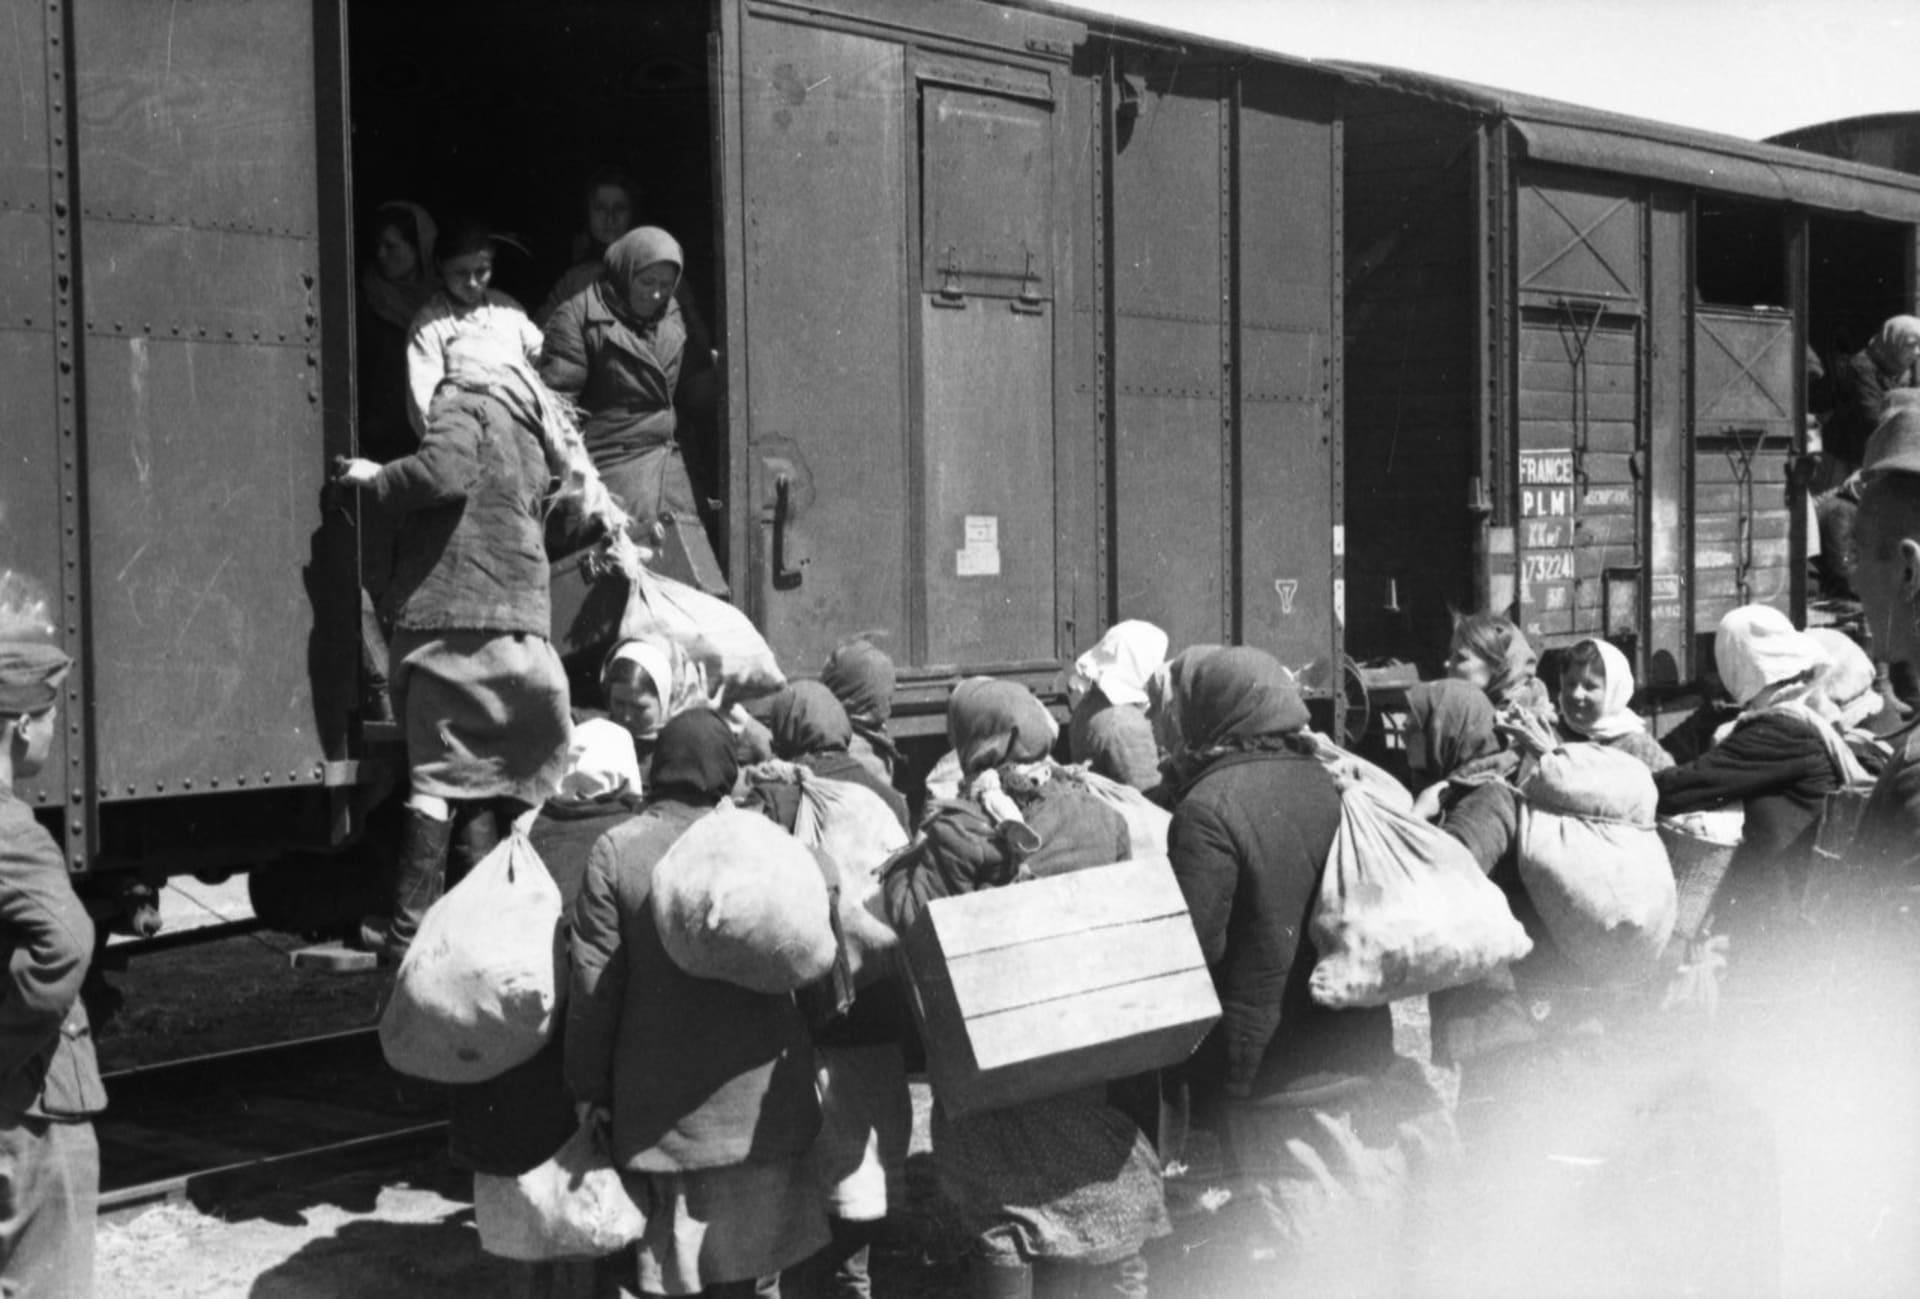 Ženy a dívky odvážené na nucenou práci do Německé říše nastupují pod dozorem do vagonu. Snímky pořídil fotograf propagandistické jednotky wehrmachtu. Ukrajina, jaro 1943.